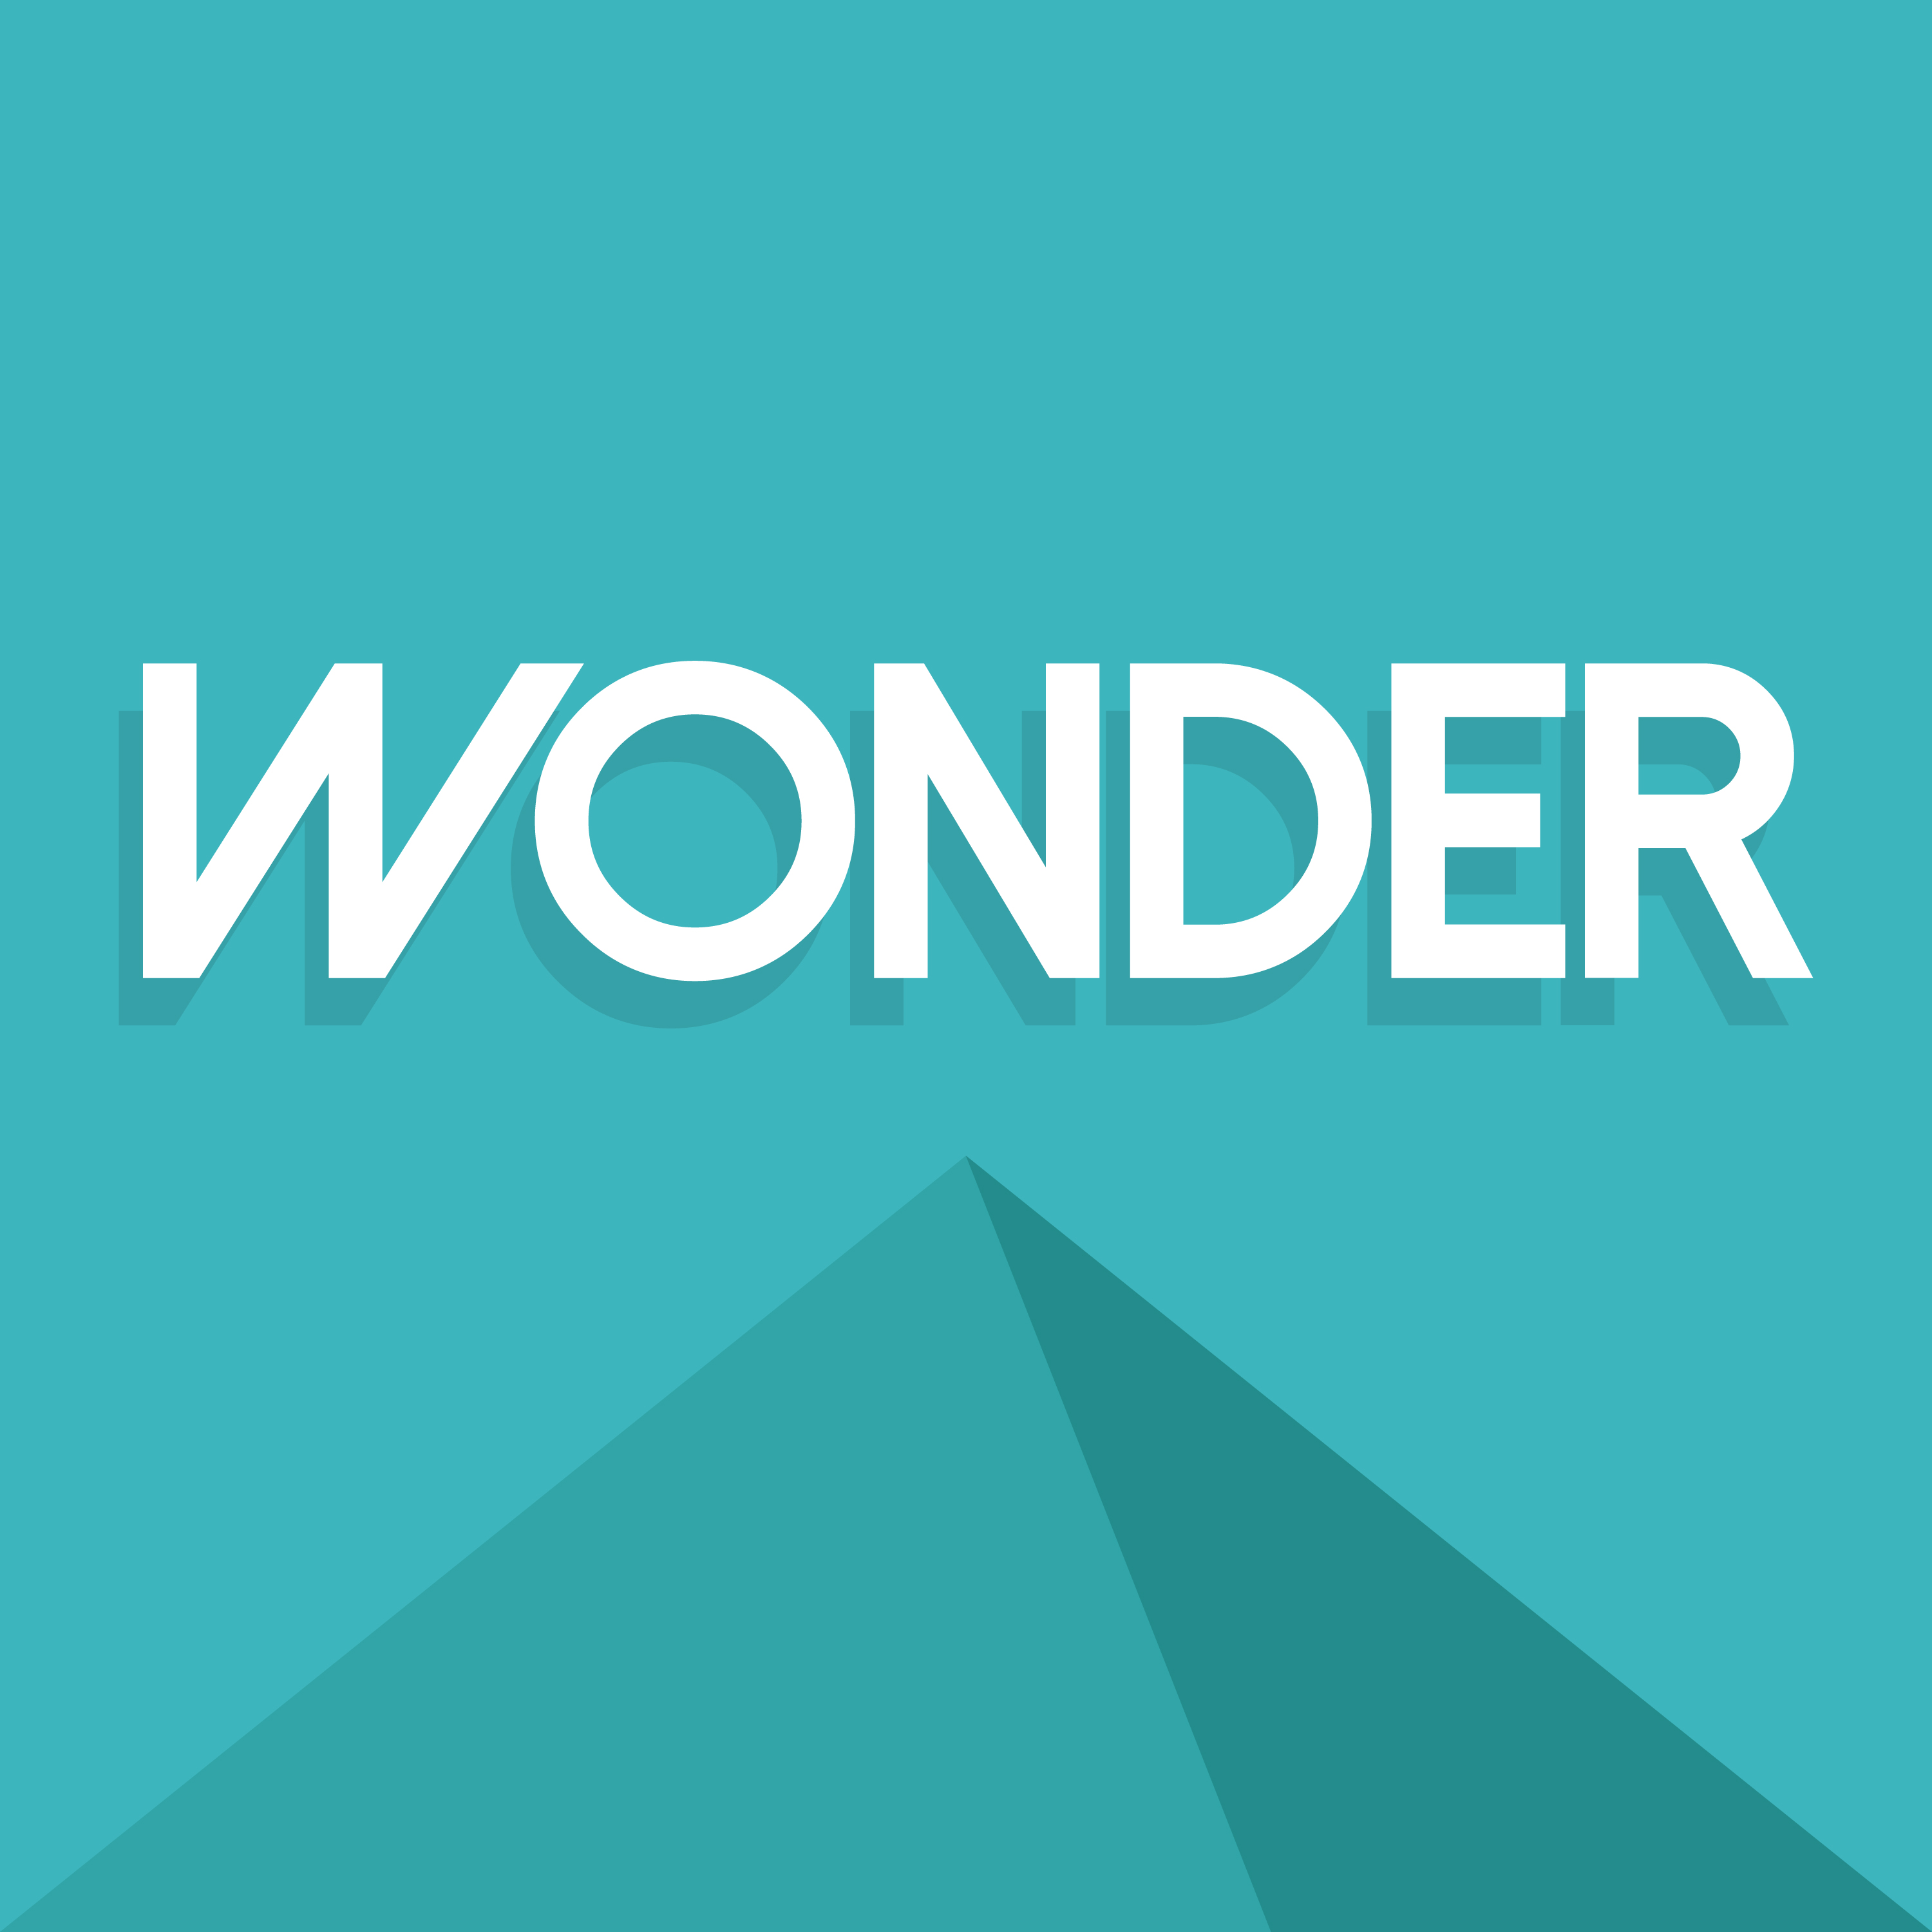 Wonder S1 Ep 02 - The Boy Wonder